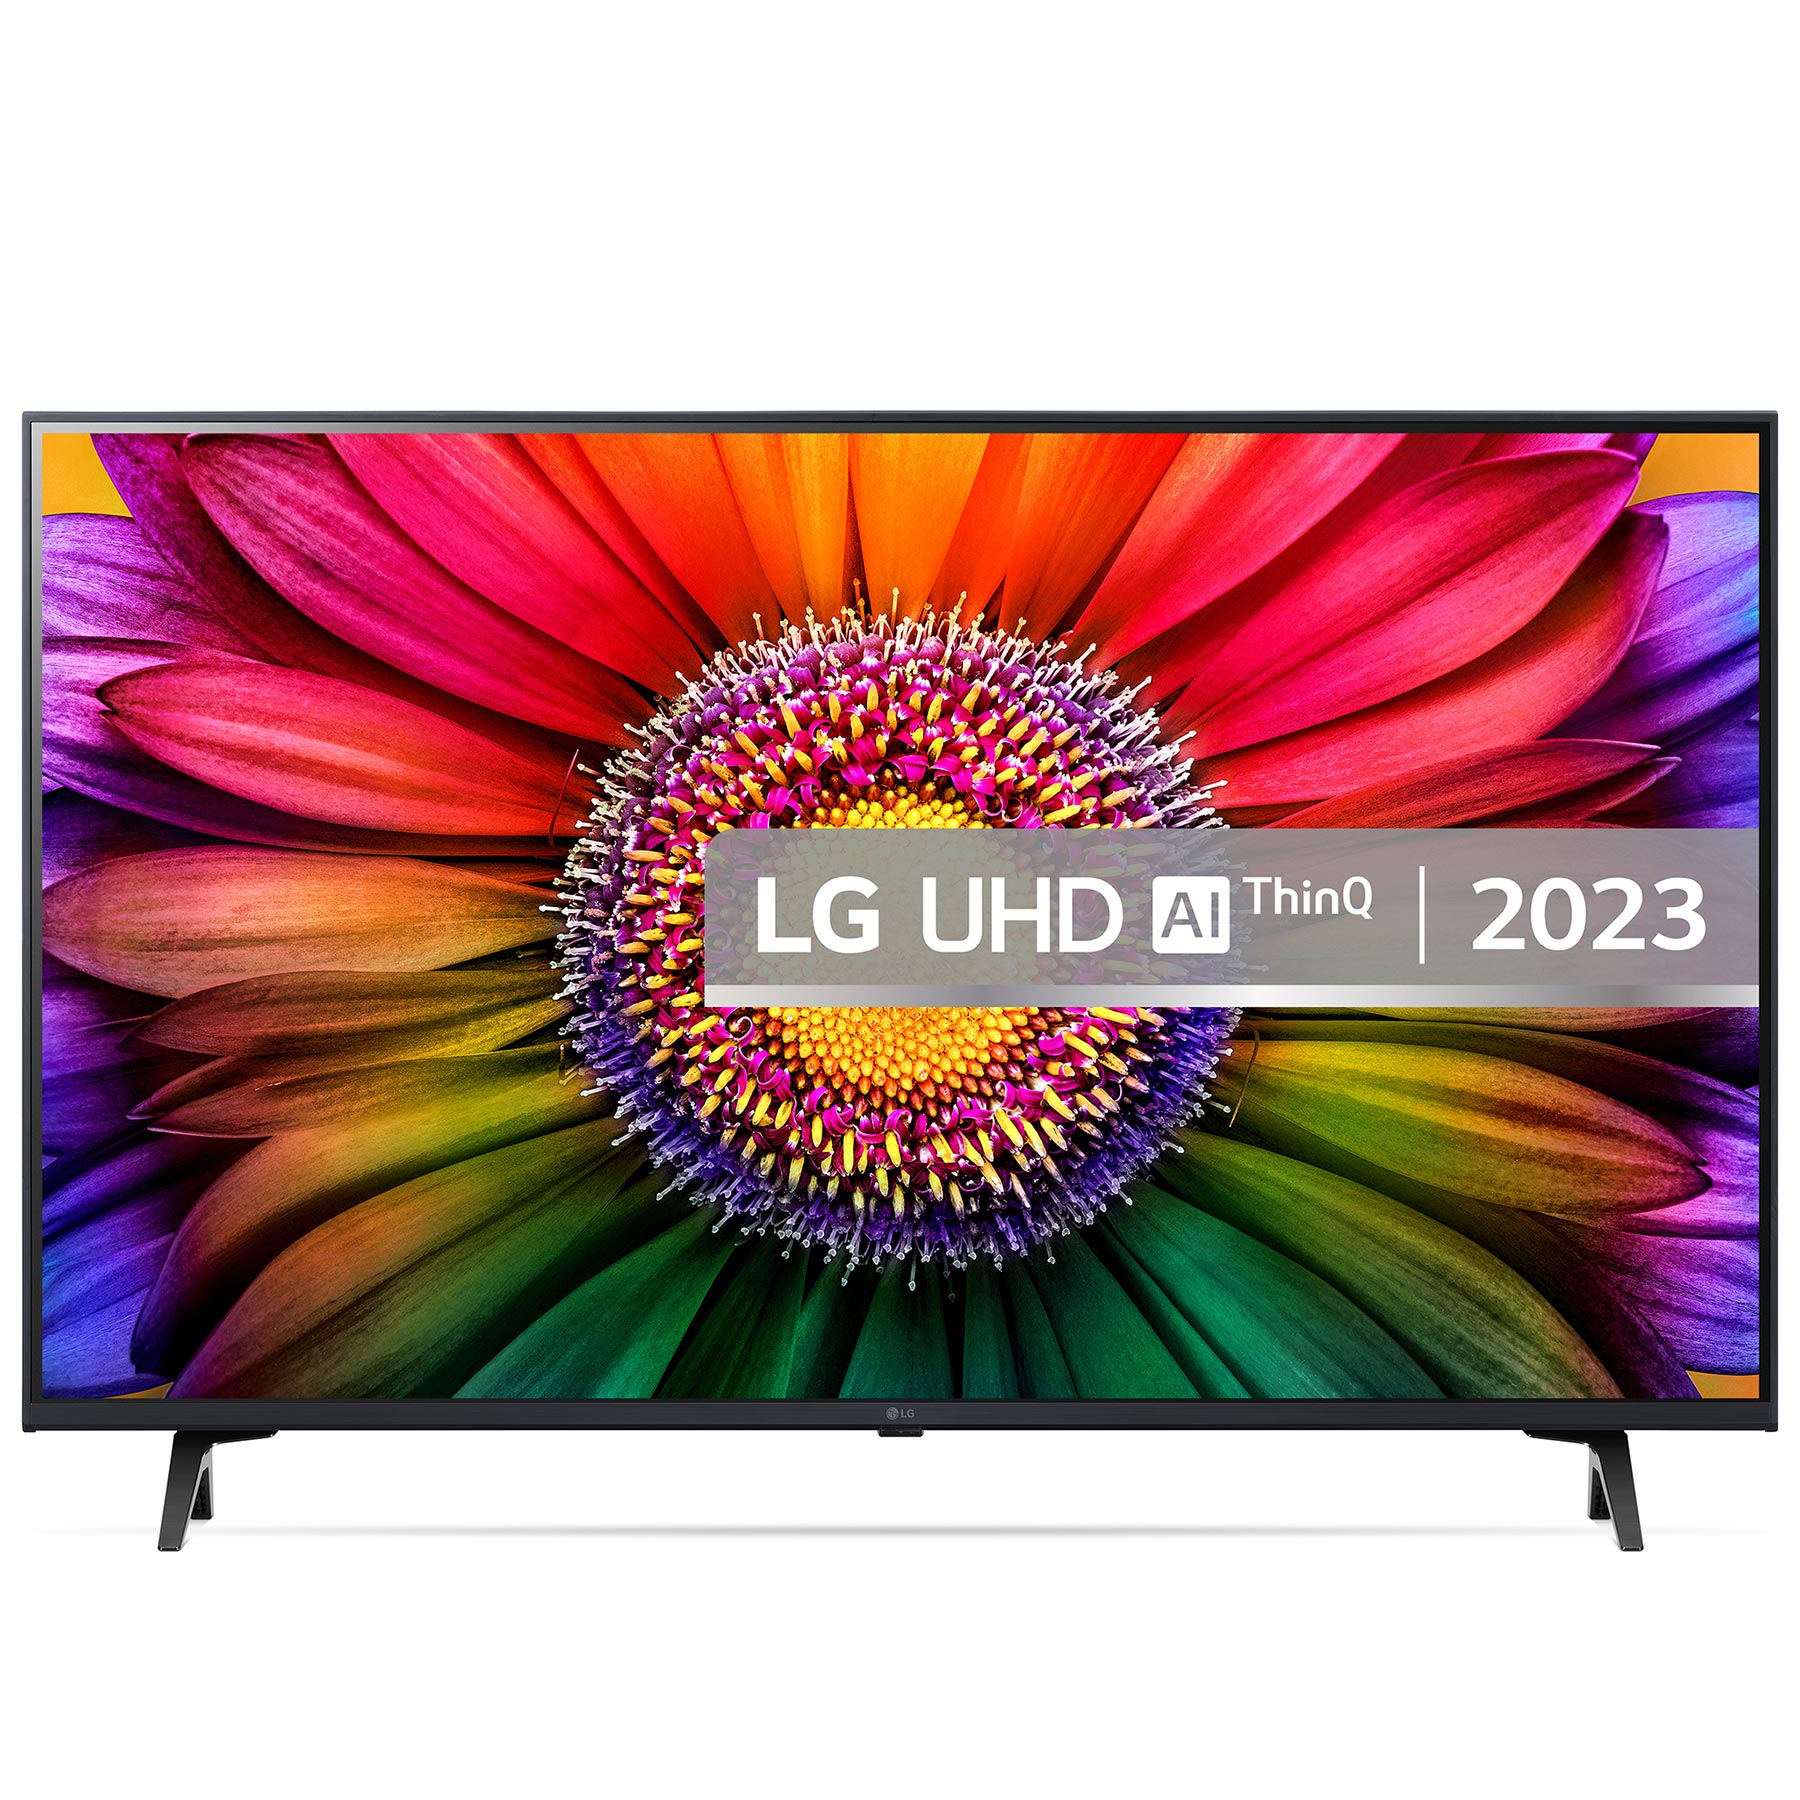 LG 43UR80006LJ 43 4K HDR UHD Smart LED TV HDR10 HLG AI Sound Pro